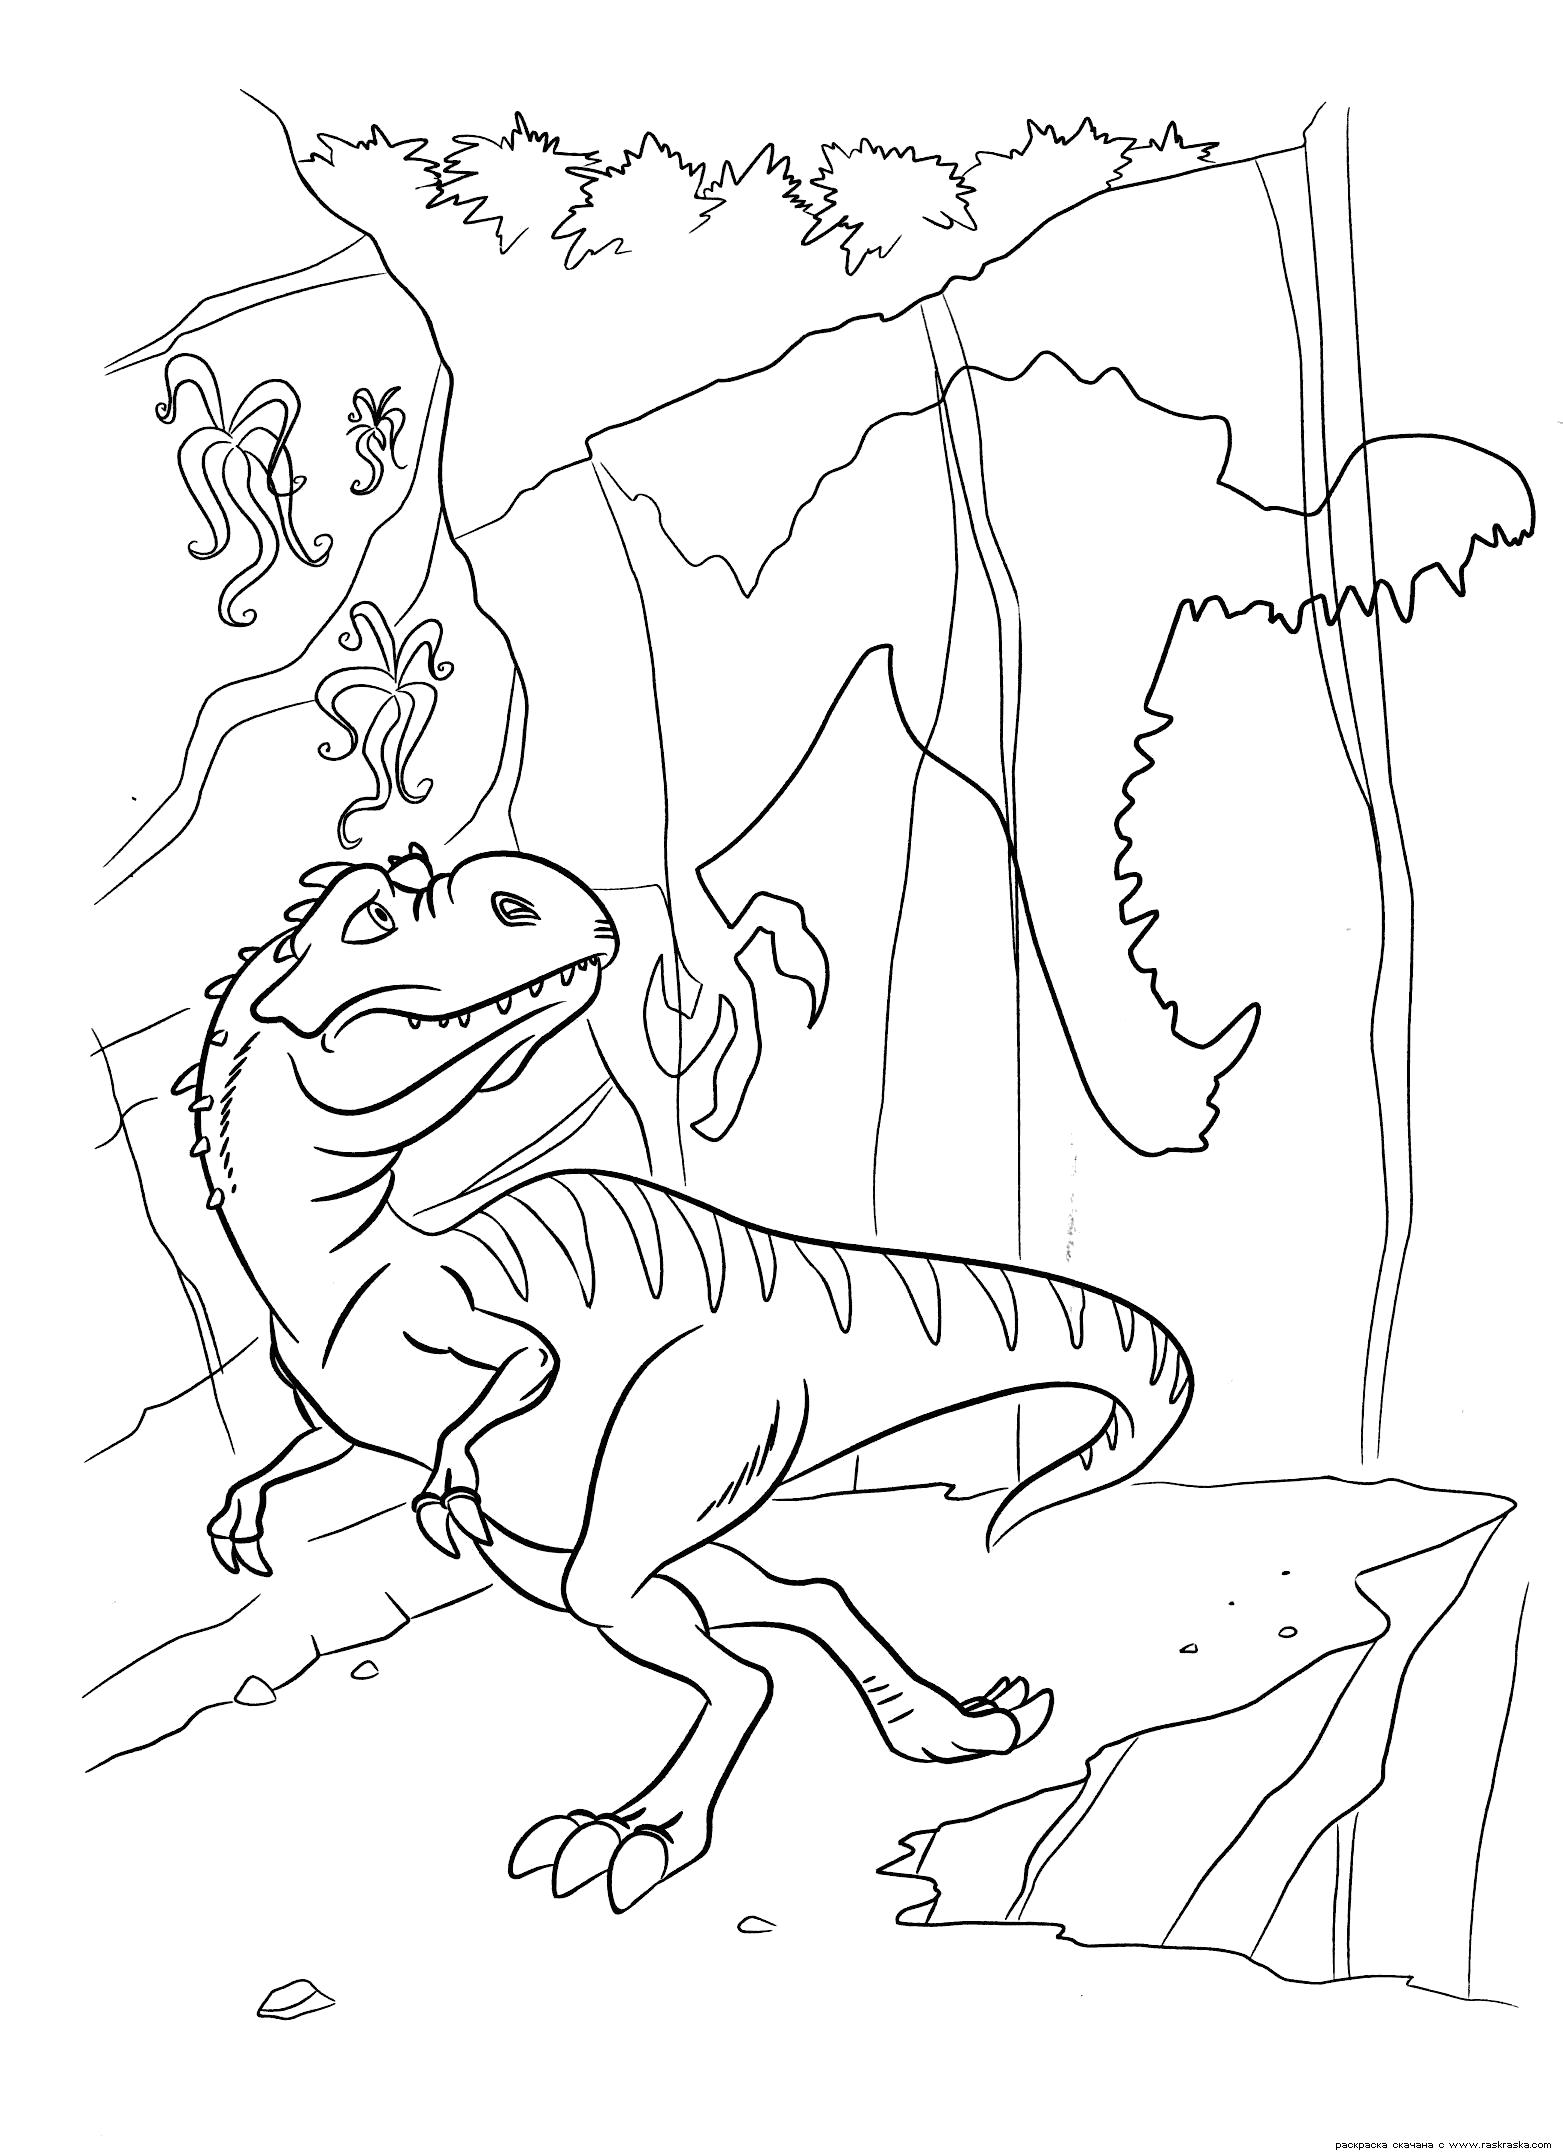 Название: Раскраска Раскраска Тень Руди. Раскраска Мама динозавриков боится за своих малышей. Раскраска динозавра из мультфильма Ледниковый период 3. Категория: динозавр. Теги: динозавр.